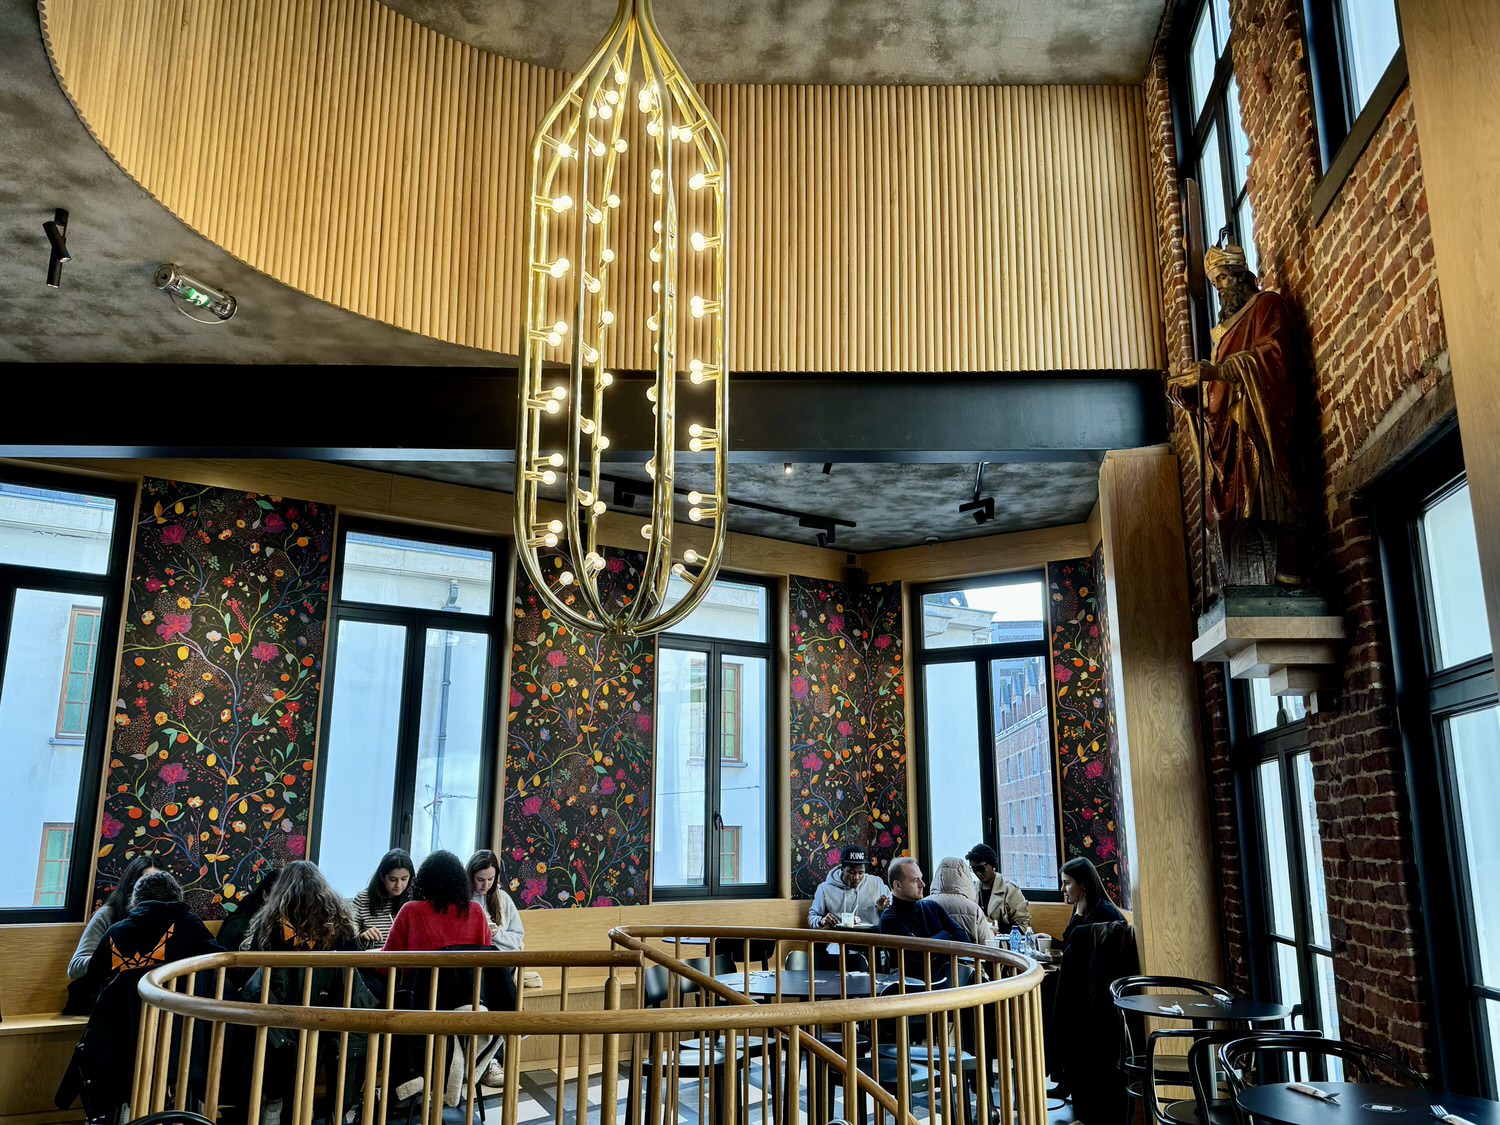 比利時 鬆餅發源地
布魯塞爾3家鬆餅評測
Maison Dandoy
Le Funambule
Obe
列日鬆餅(Liège Waffle)
布魯塞爾鬆餅(Brussels Waffle)
聖余貝爾長廊分店(Galeries)
布魯日Chez Albert